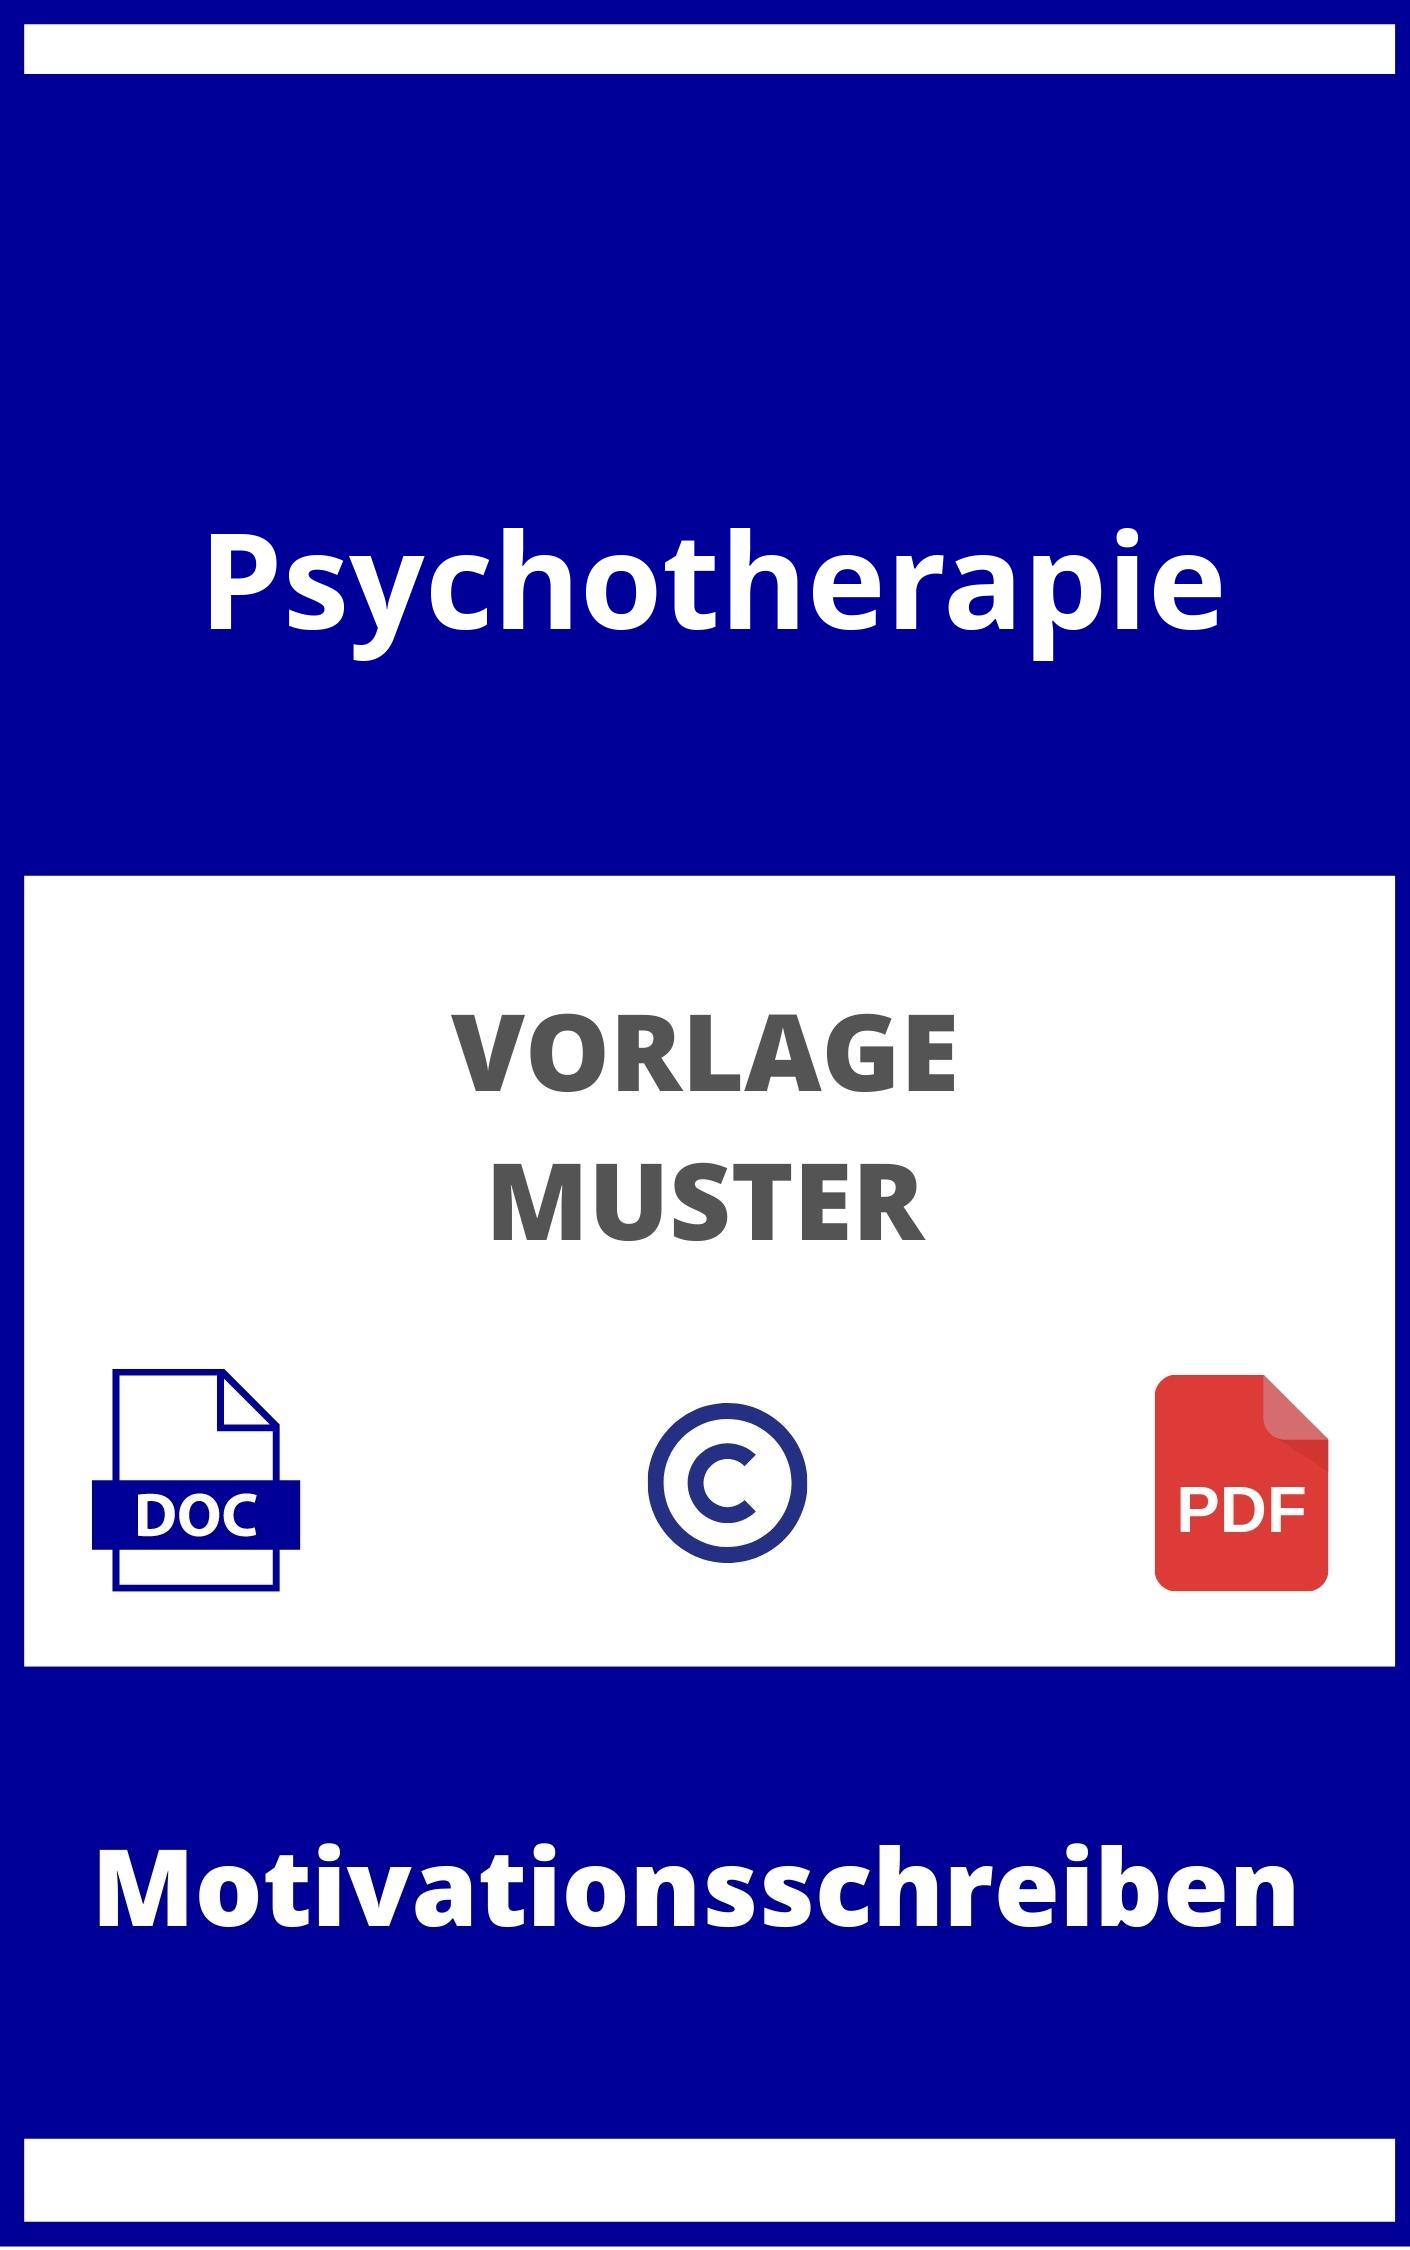 Motivationsschreiben Psychotherapie